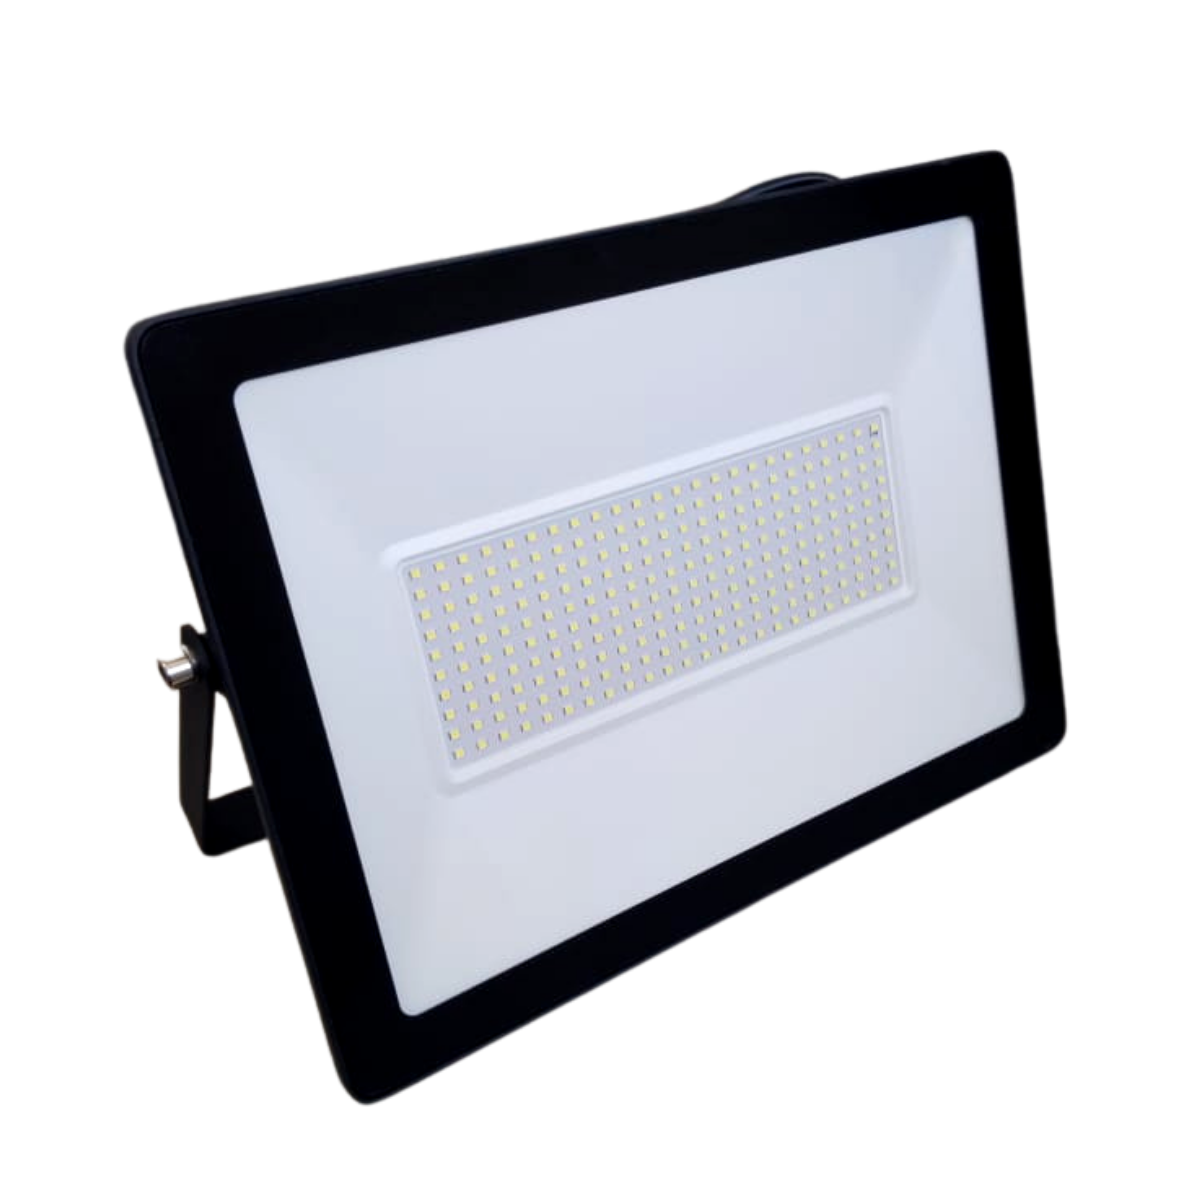 Reflector LED de 200W Marca Emity Iluminación Exterior - EGAVAL